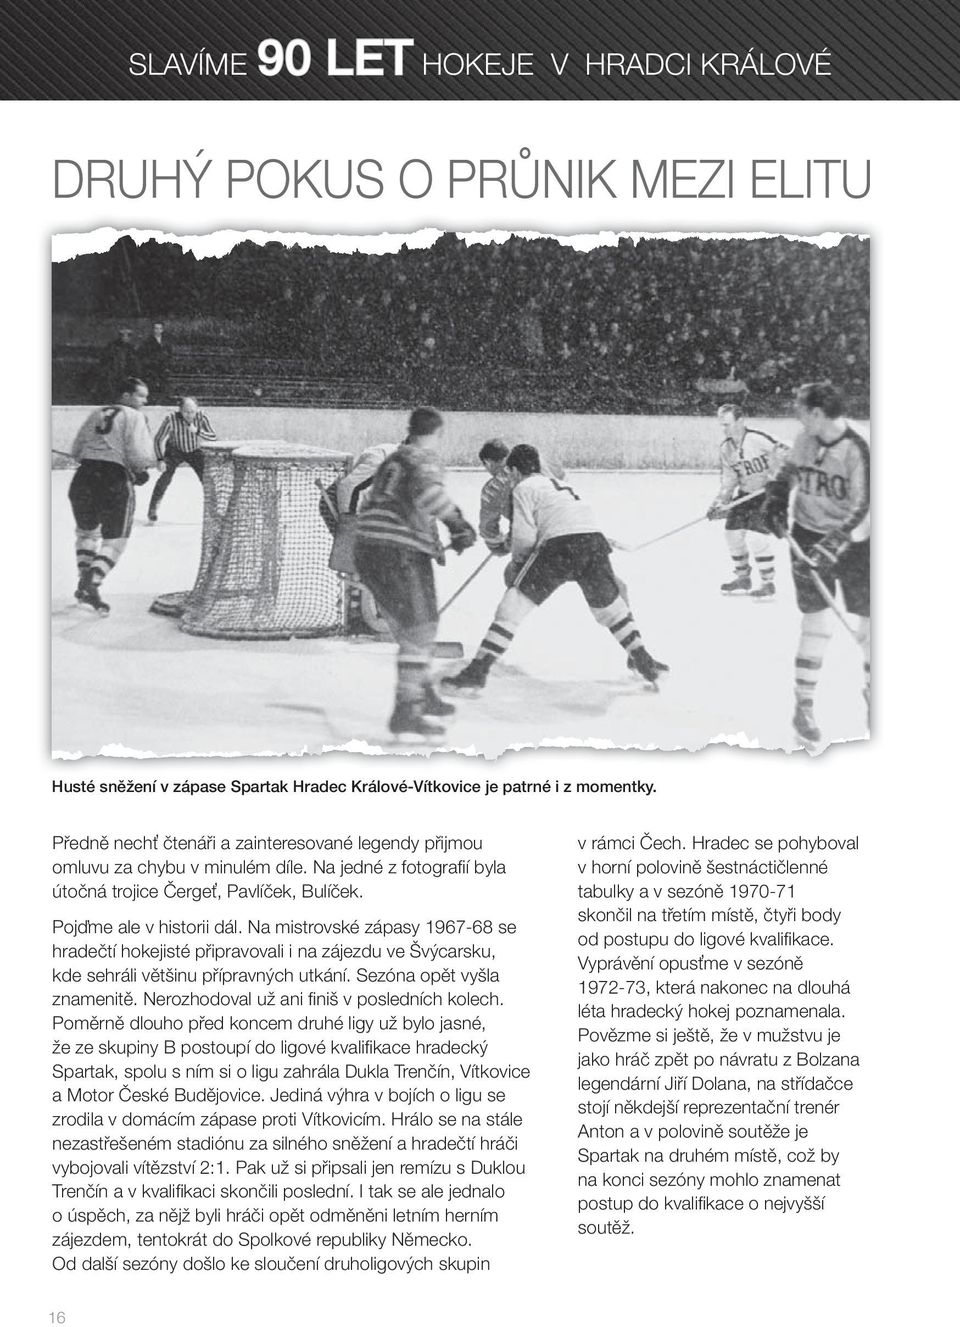 Na mistrovské zápasy 1967-68 se hradečtí hokejisté připravovali i na zájezdu ve Švýcarsku, kde sehráli většinu přípravných utkání. Sezóna opět vyšla znamenitě.